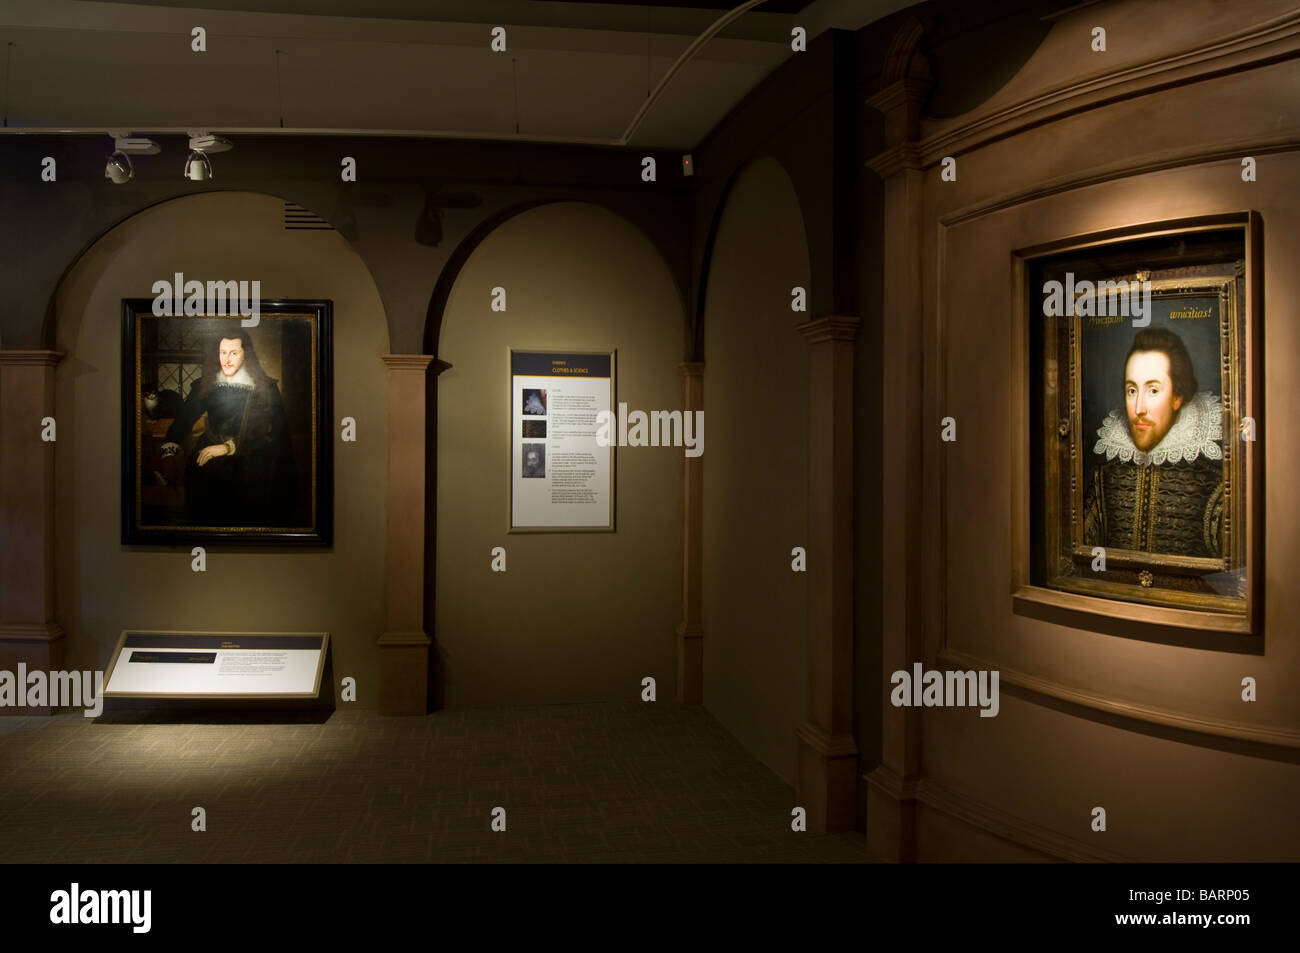 Das "Cobbe" Porträt (rechts) von William Shakespeare in der "Shakespeare gefunden" Ausstellung im Shakespeare Birthplace Trust. Stockfoto